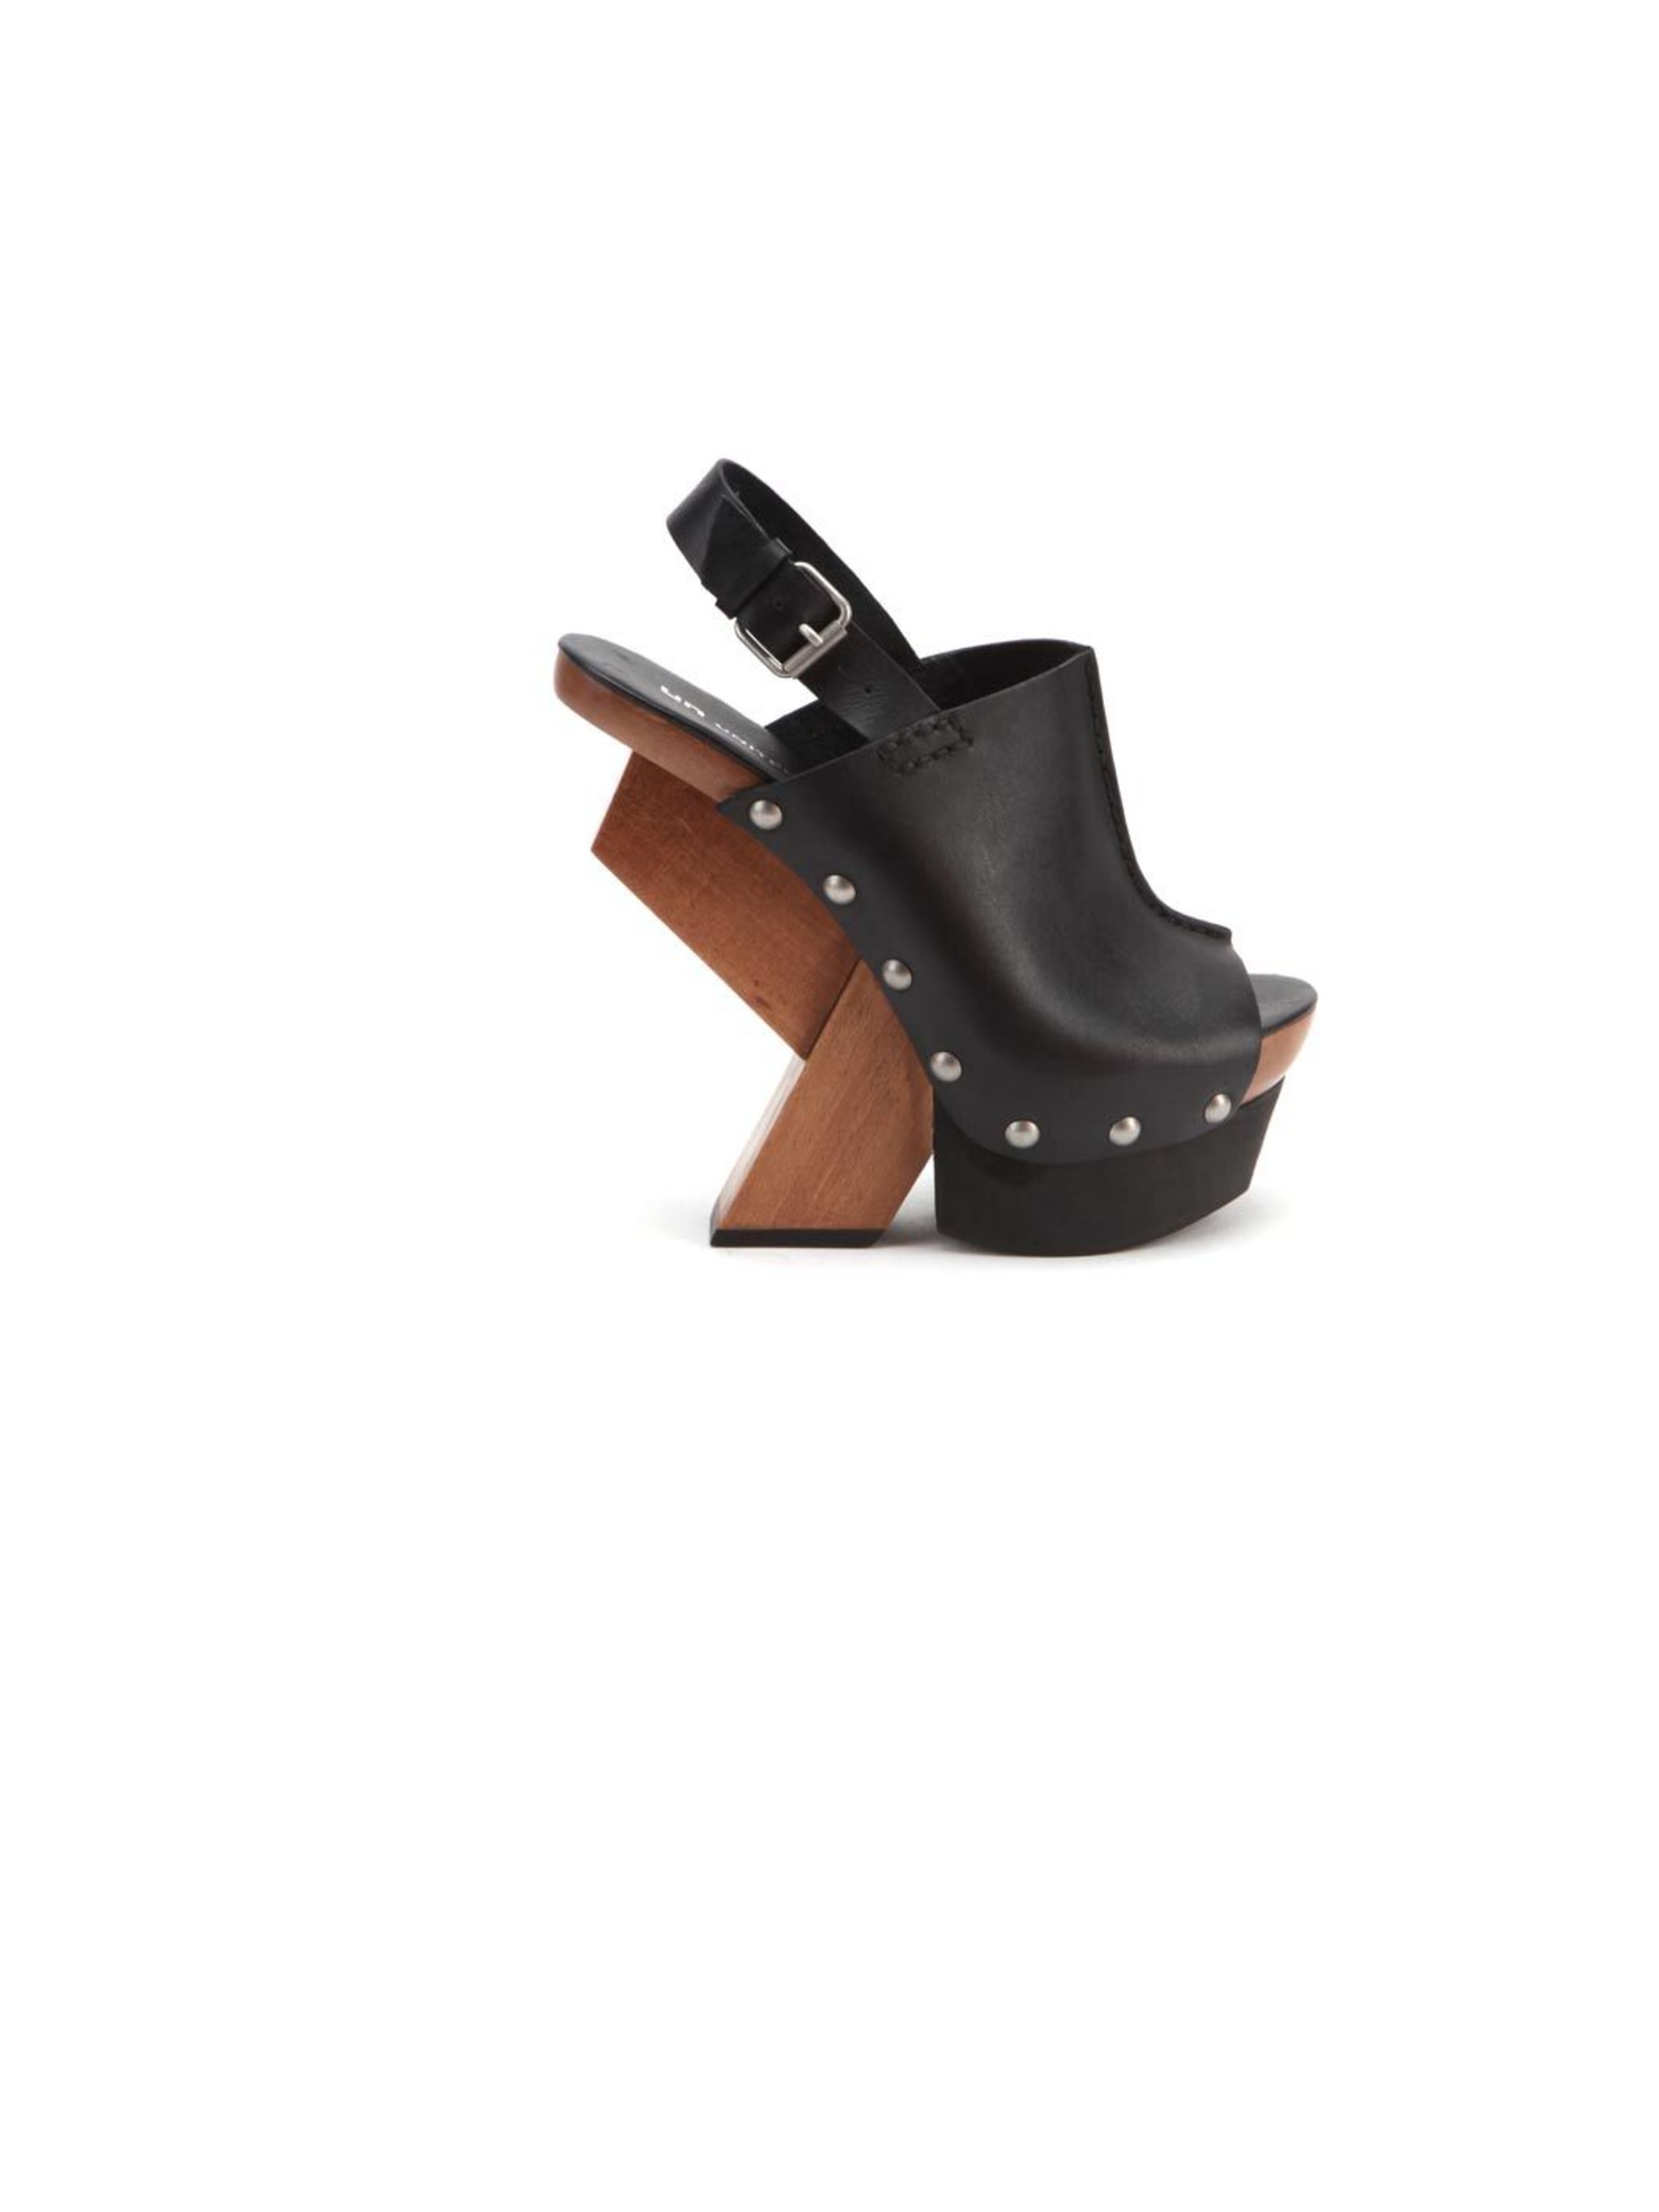 Buy > wooden heeled sandals > in stock